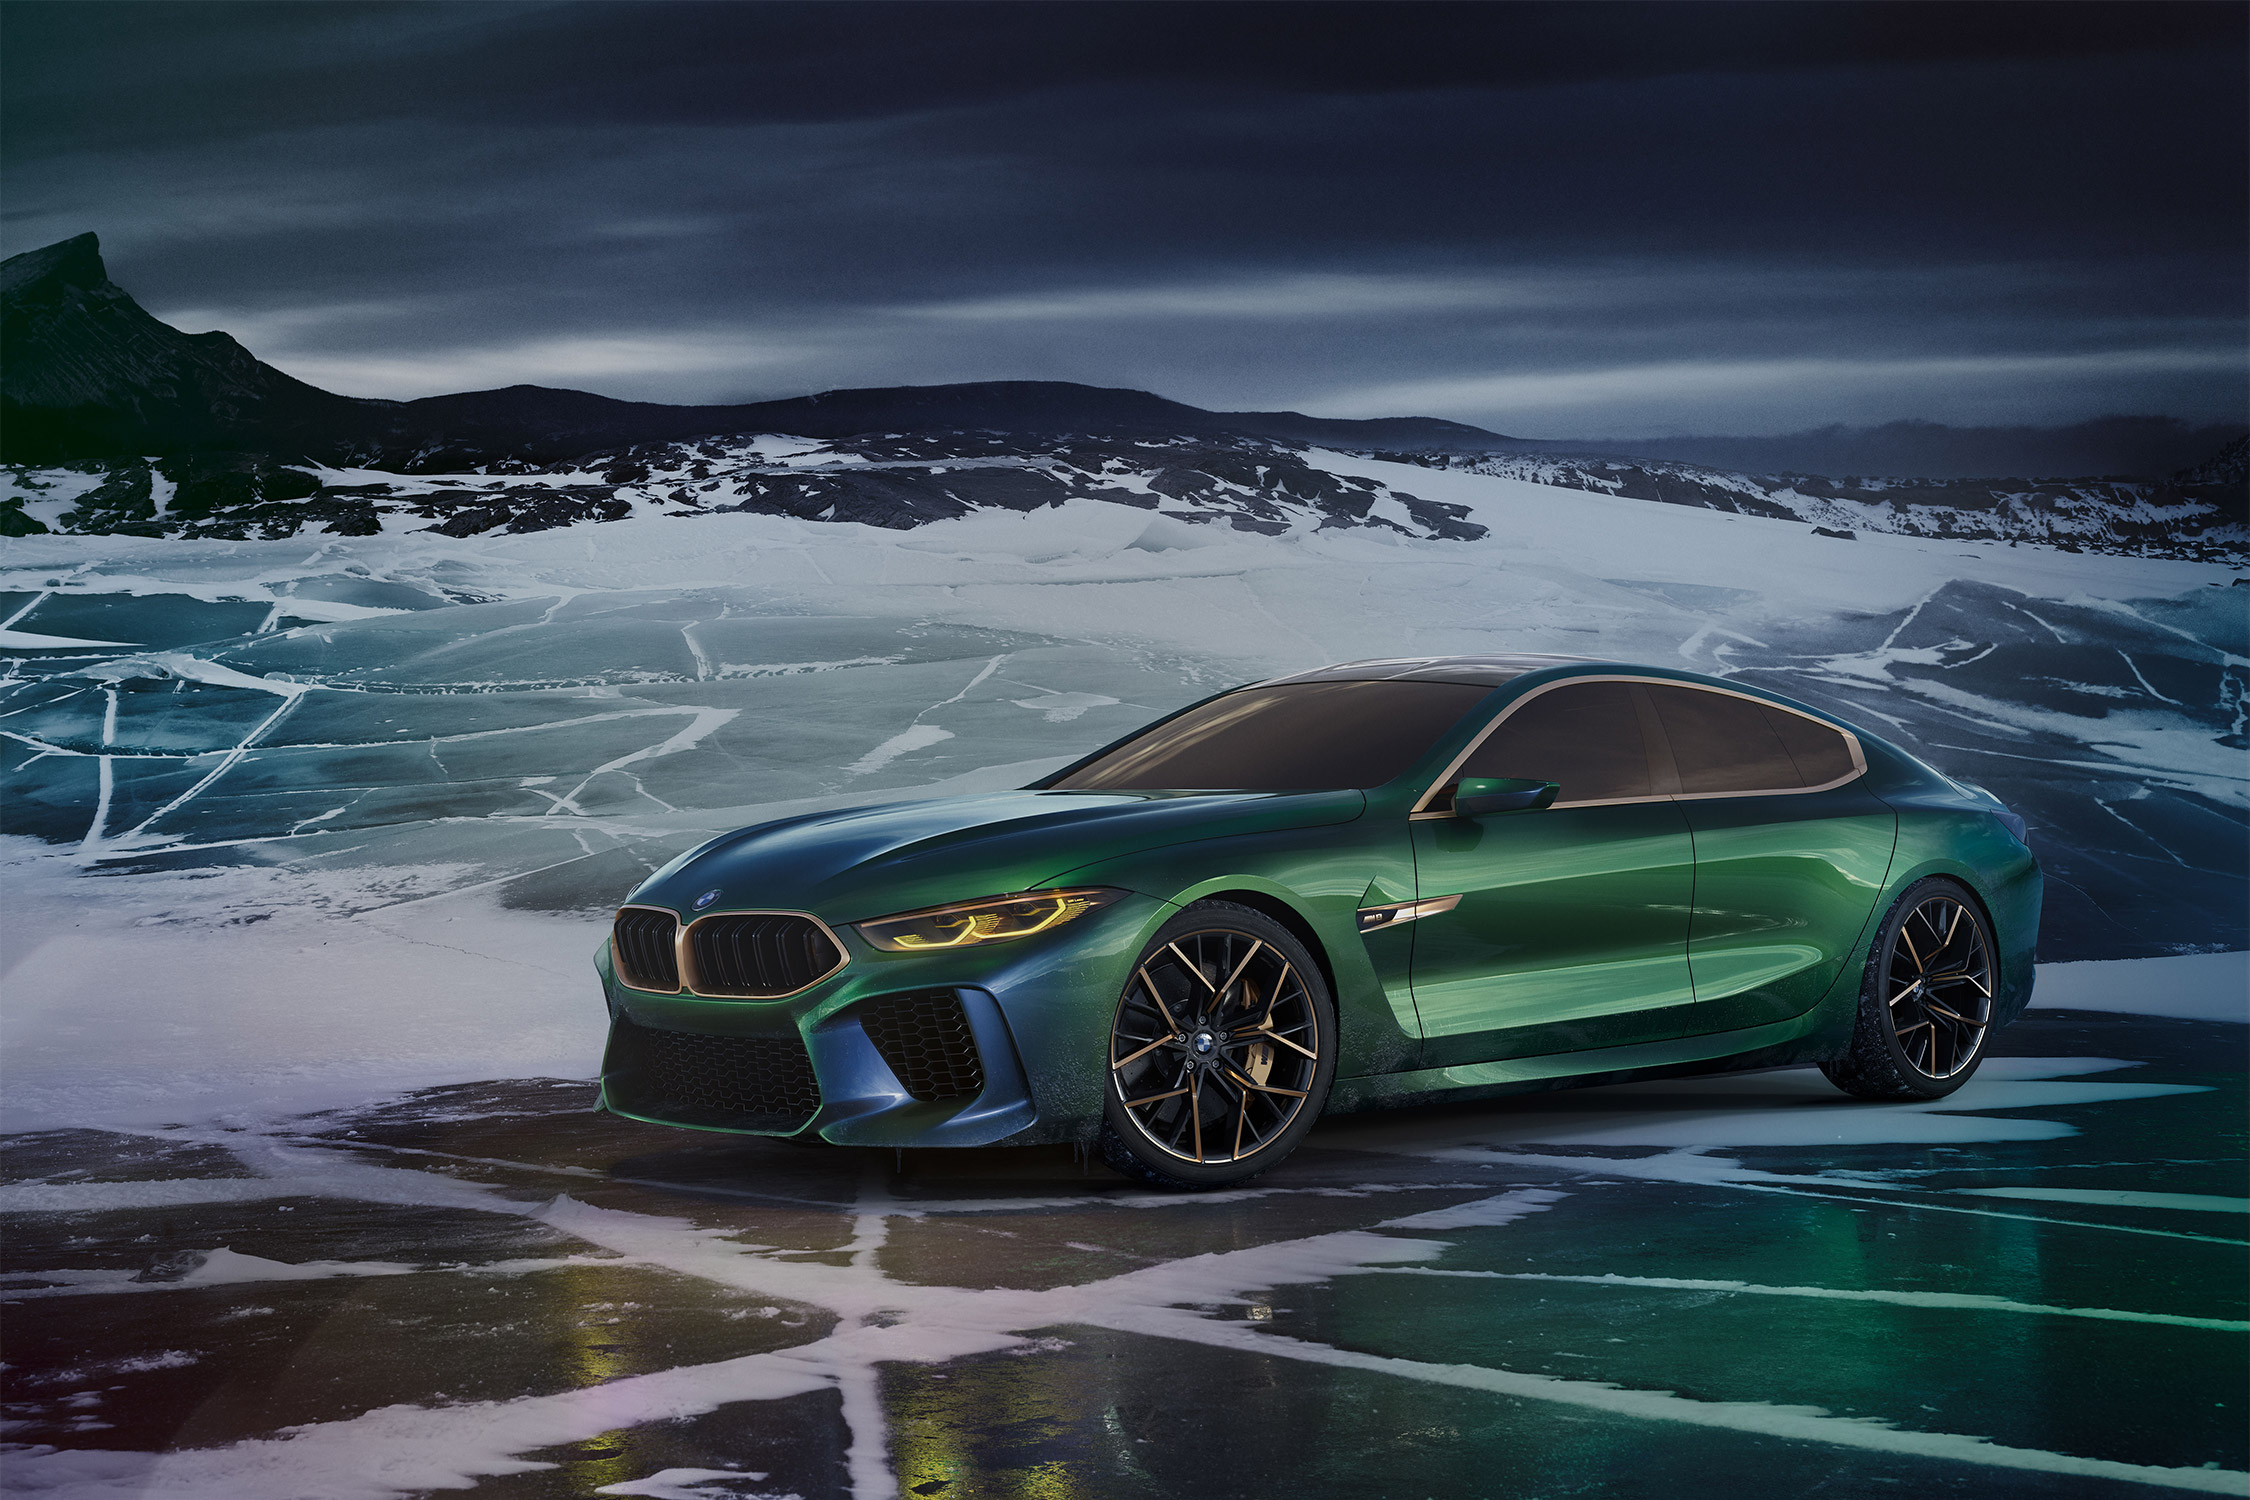 photo BMW M8 Gran Coupe Concept concept-car 2018 - Motorlegend.com